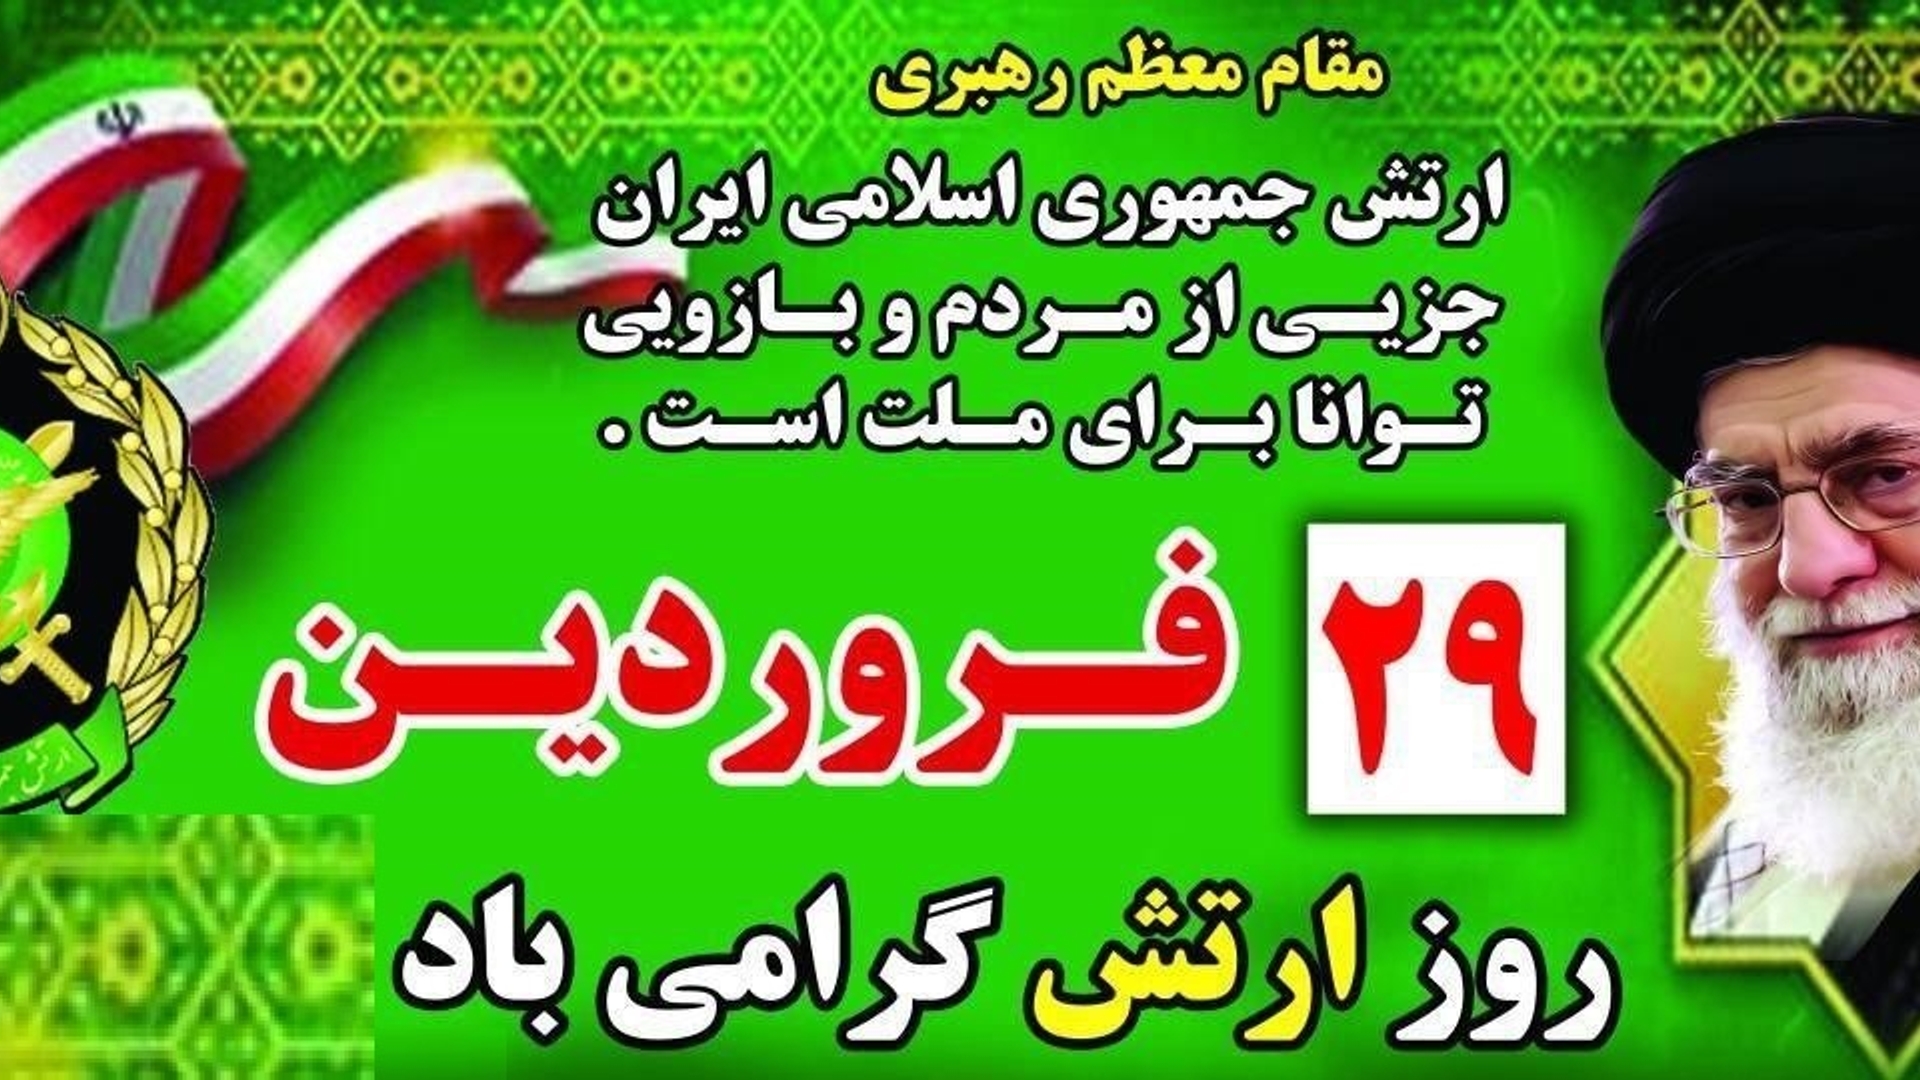 "" روز ارتش جمهوری اسلامی مبارک باد  ""